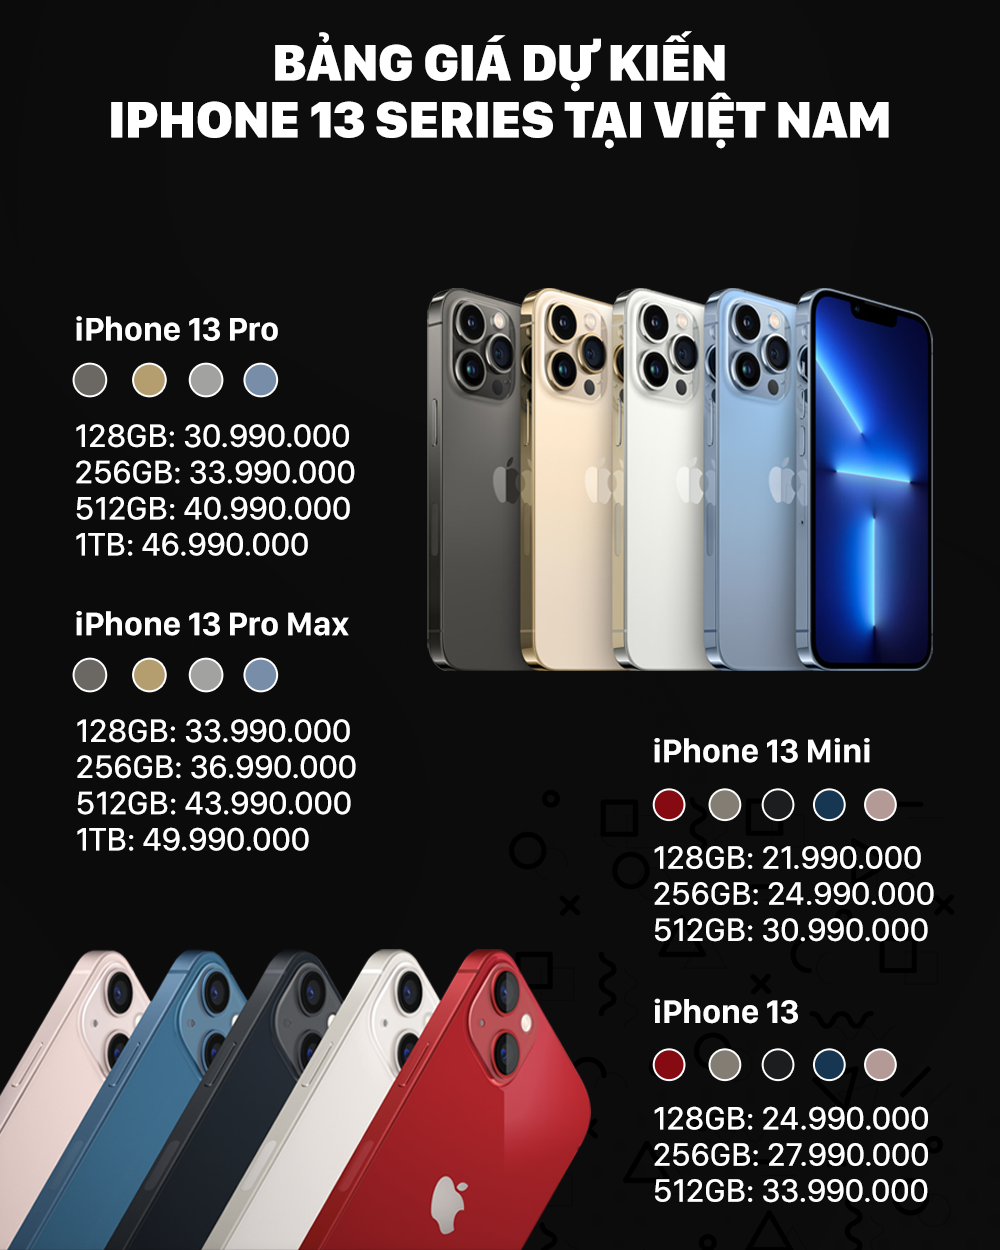 Bảng giá iPhone 13 dự kiến tại Việt Nam.